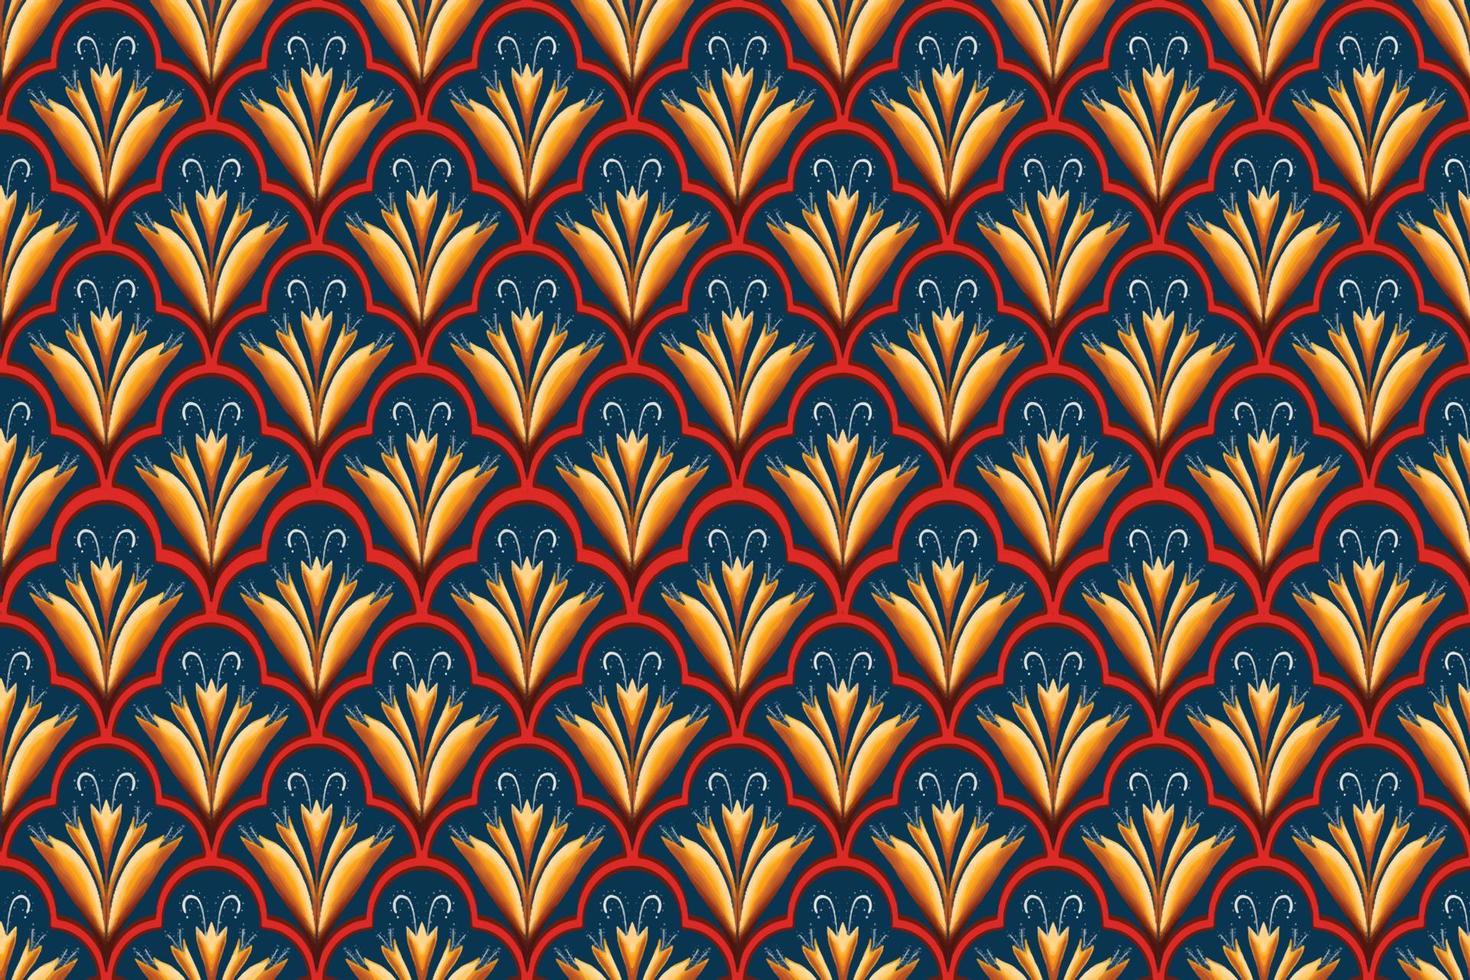 jaune, rouge, blanc sur bleu marine. motif géométrique oriental ethnique design traditionnel pour le fond tapis papier peint vêtements emballage batik tissu illustration vectorielle style de broderie vecteur